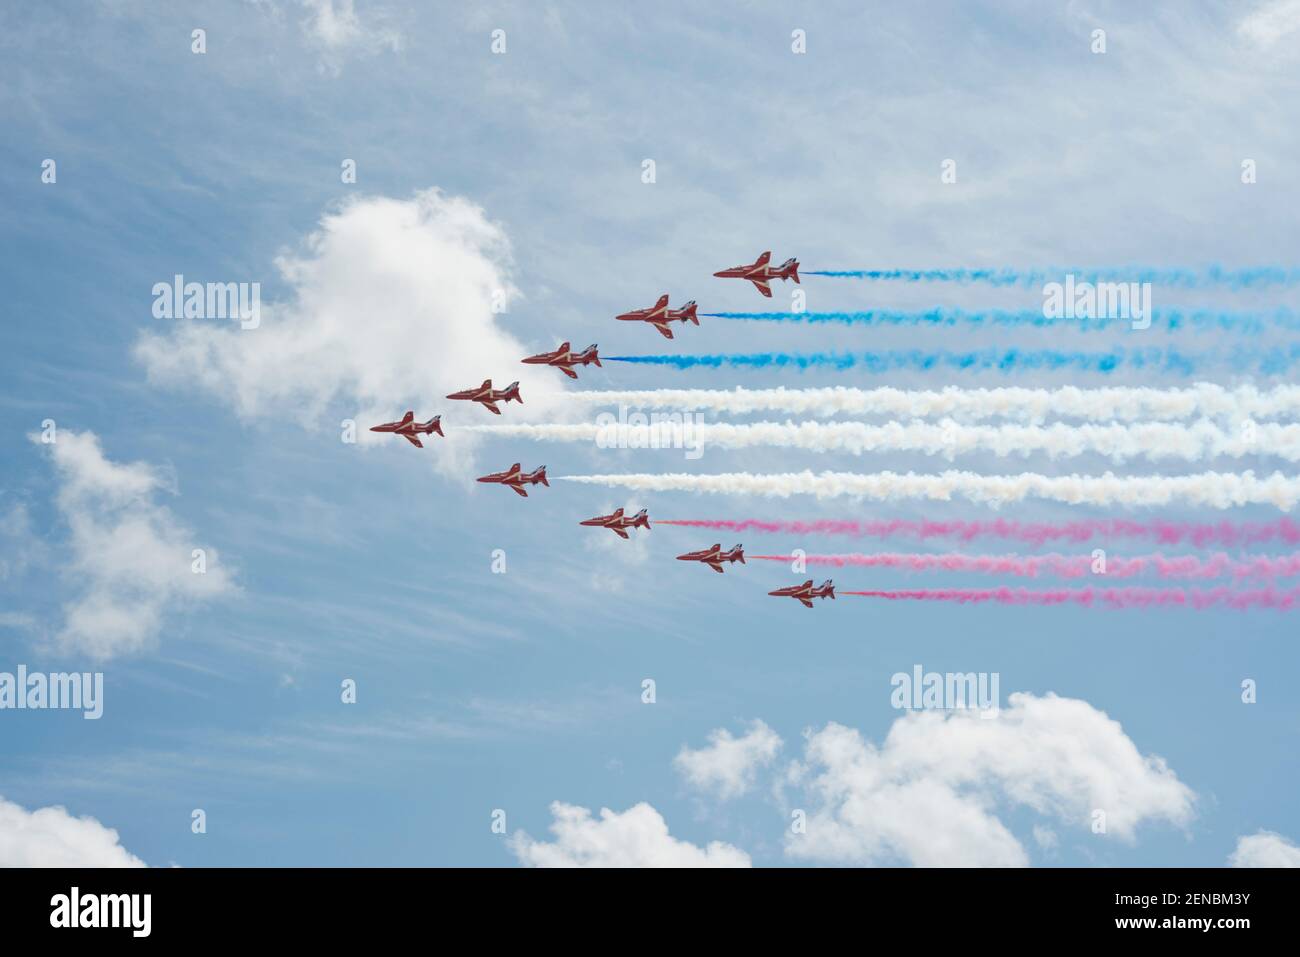 Die roten Pfeile zeigen das Team in Aktion. Das Royal Air Force Aerobatic Team. Rot-weiße und blaue Dampfspuren. Stockfoto